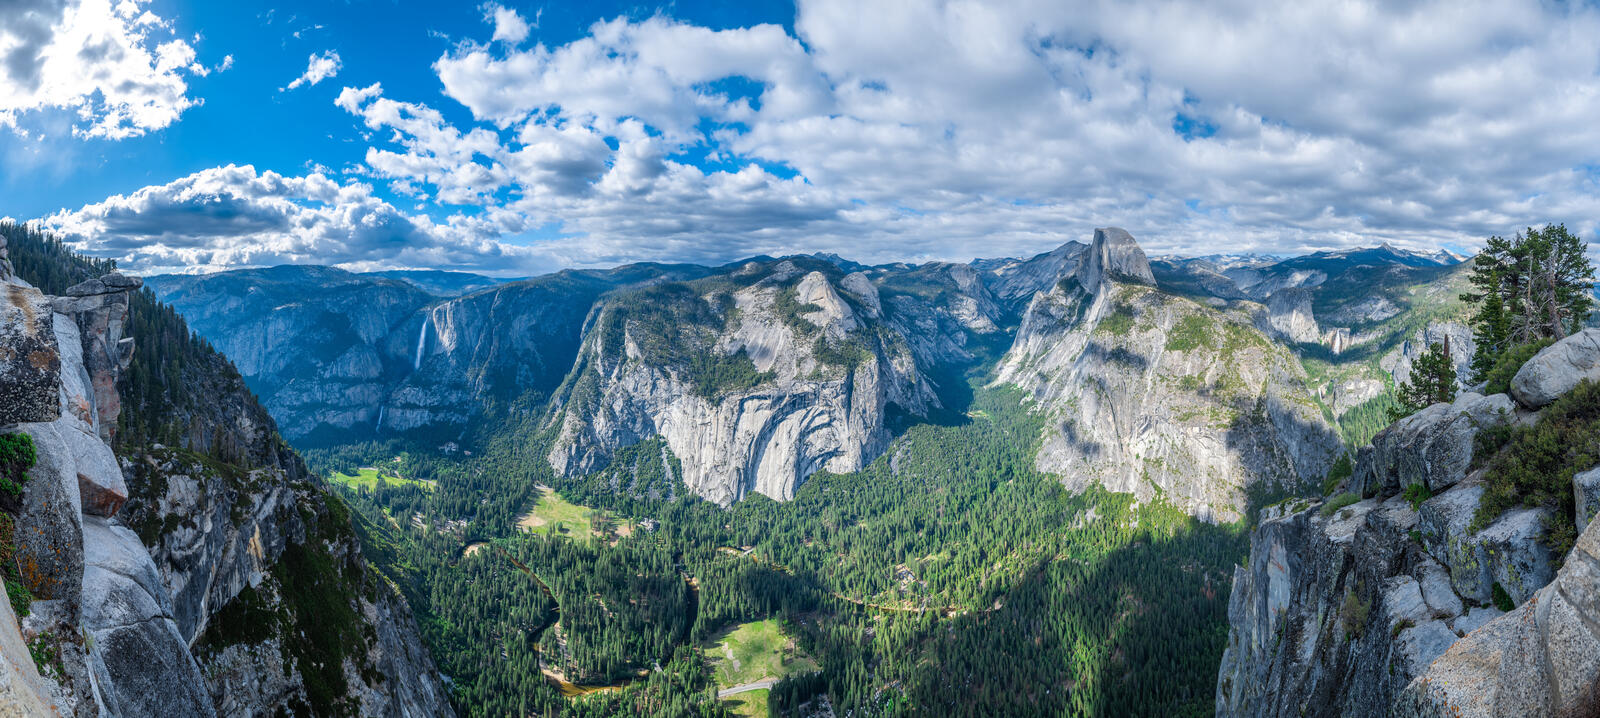 桌面上的壁纸优胜美地 加州山脉 美国自然